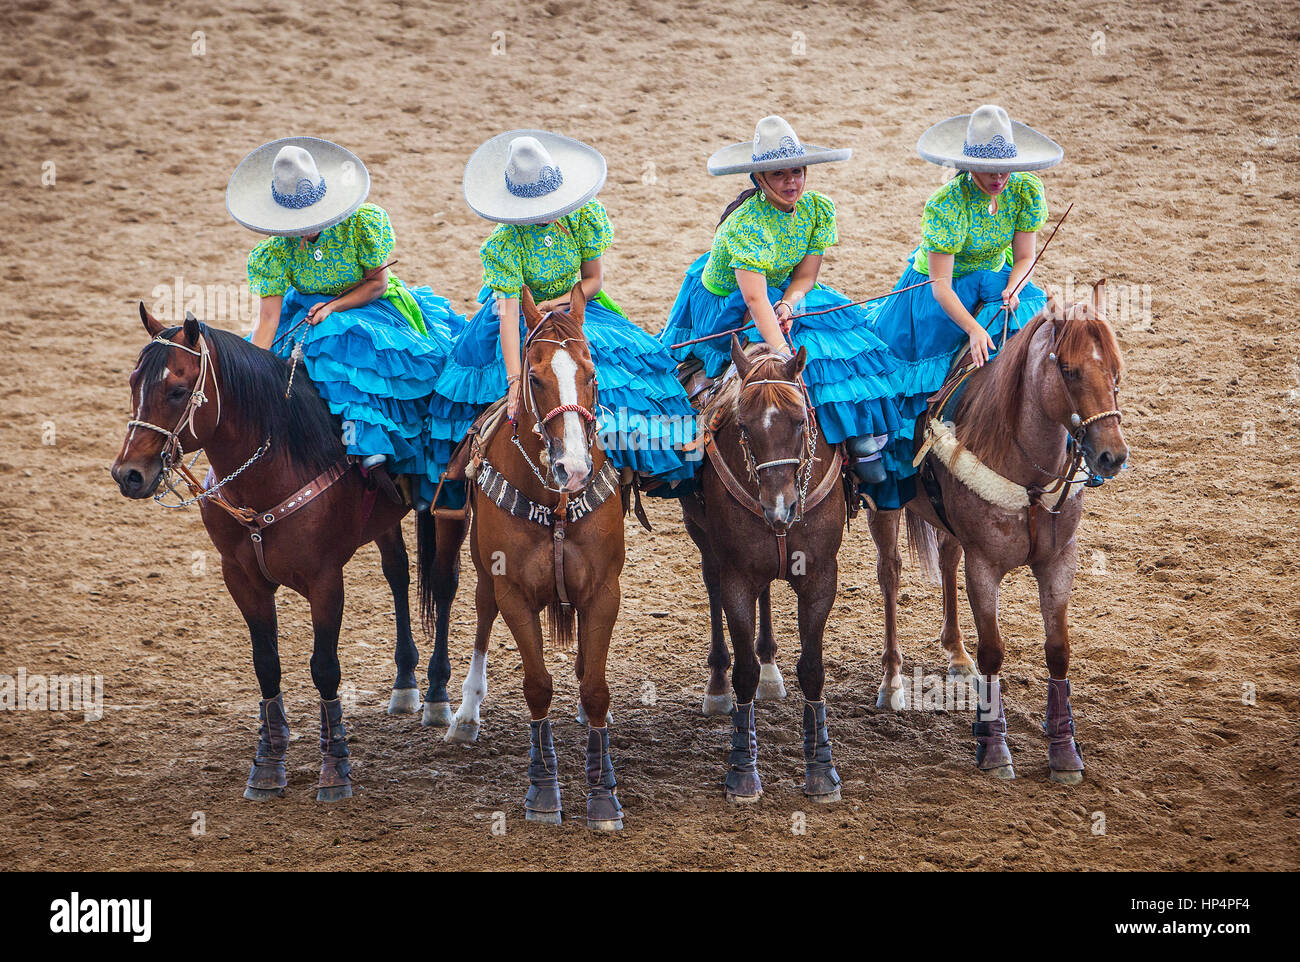 Escaramuzas Reiten ihre Pferde. Eine Charreada mexikanische Rodeo auf dem Lienzo Charro Zermeno, Guadalajara, Jalisco, Mexiko Stockfoto